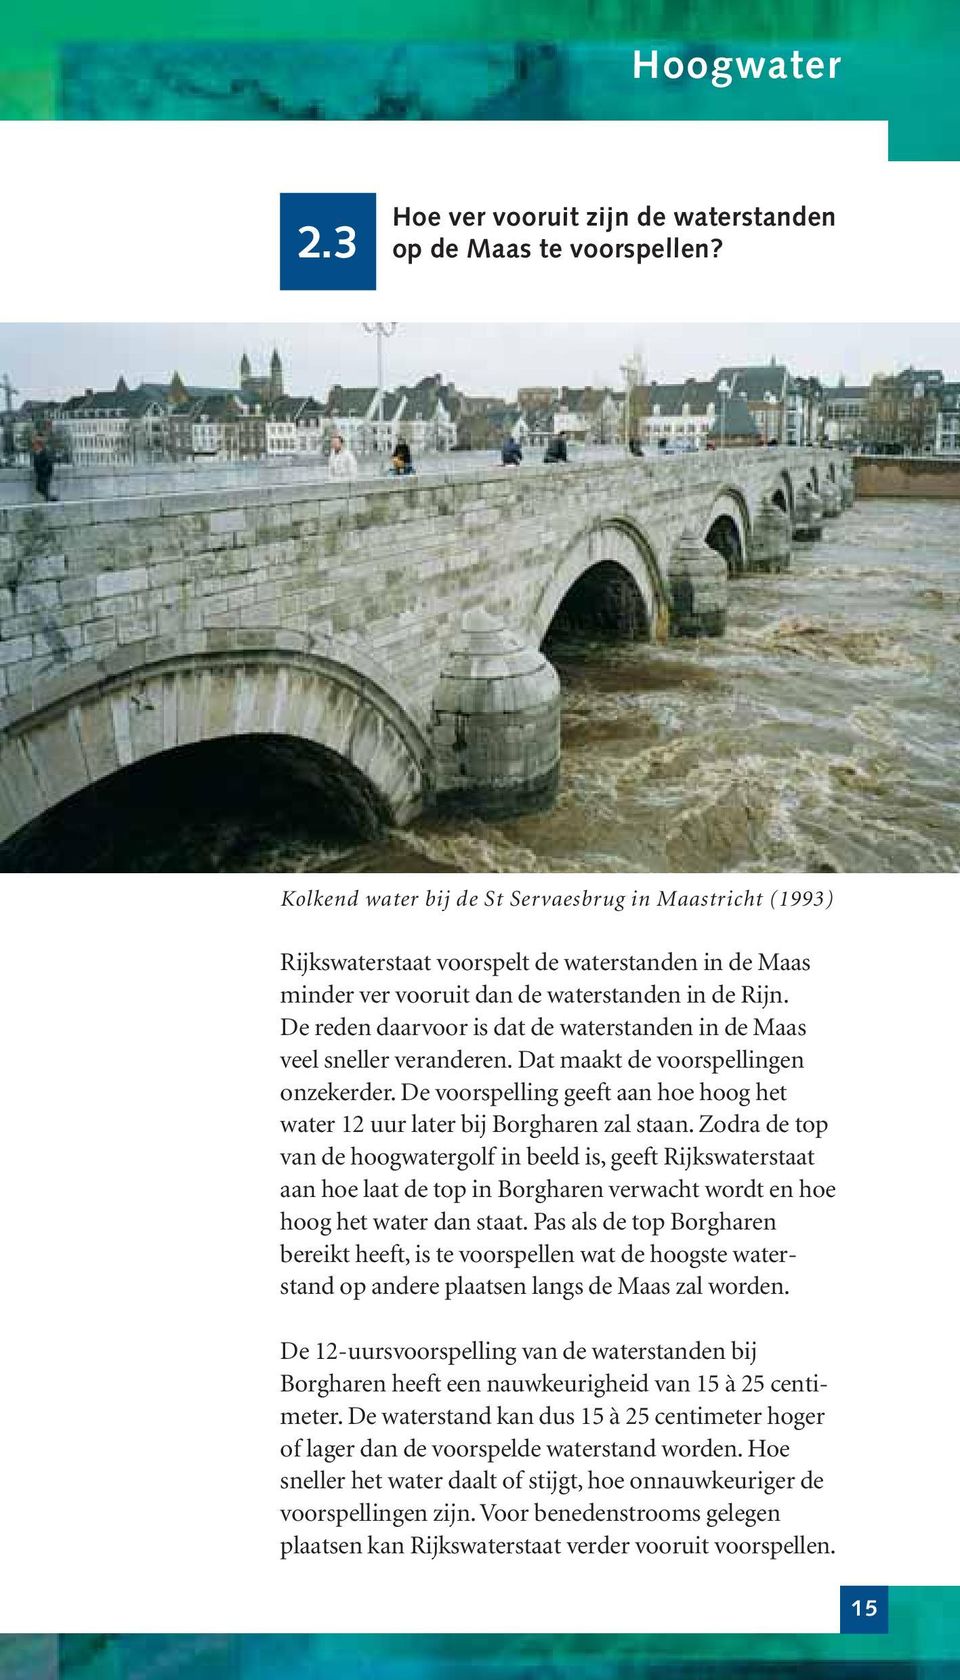 De reden daarvoor is dat de waterstanden in de Maas veel sneller veranderen. Dat maakt de voorspellingen onzekerder. De voorspelling geeft aan hoe hoog het water 12 uur later bij Borgharen zal staan.